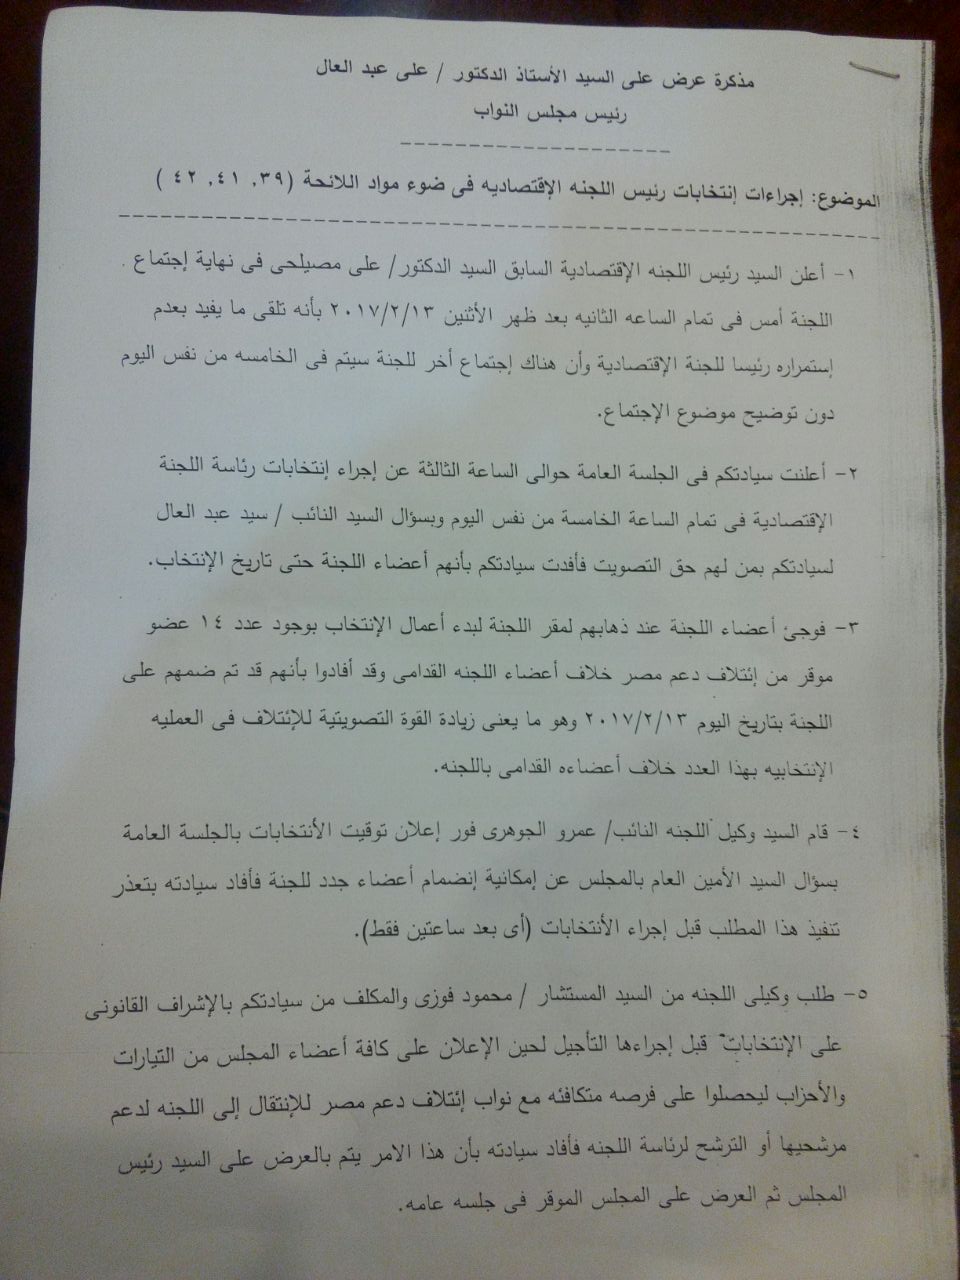 مذكرة للدكتور على عبد العال رئيس المجلس للمطالبة بإعادة إجراء انتخابات رئاسة اللجنة (1)